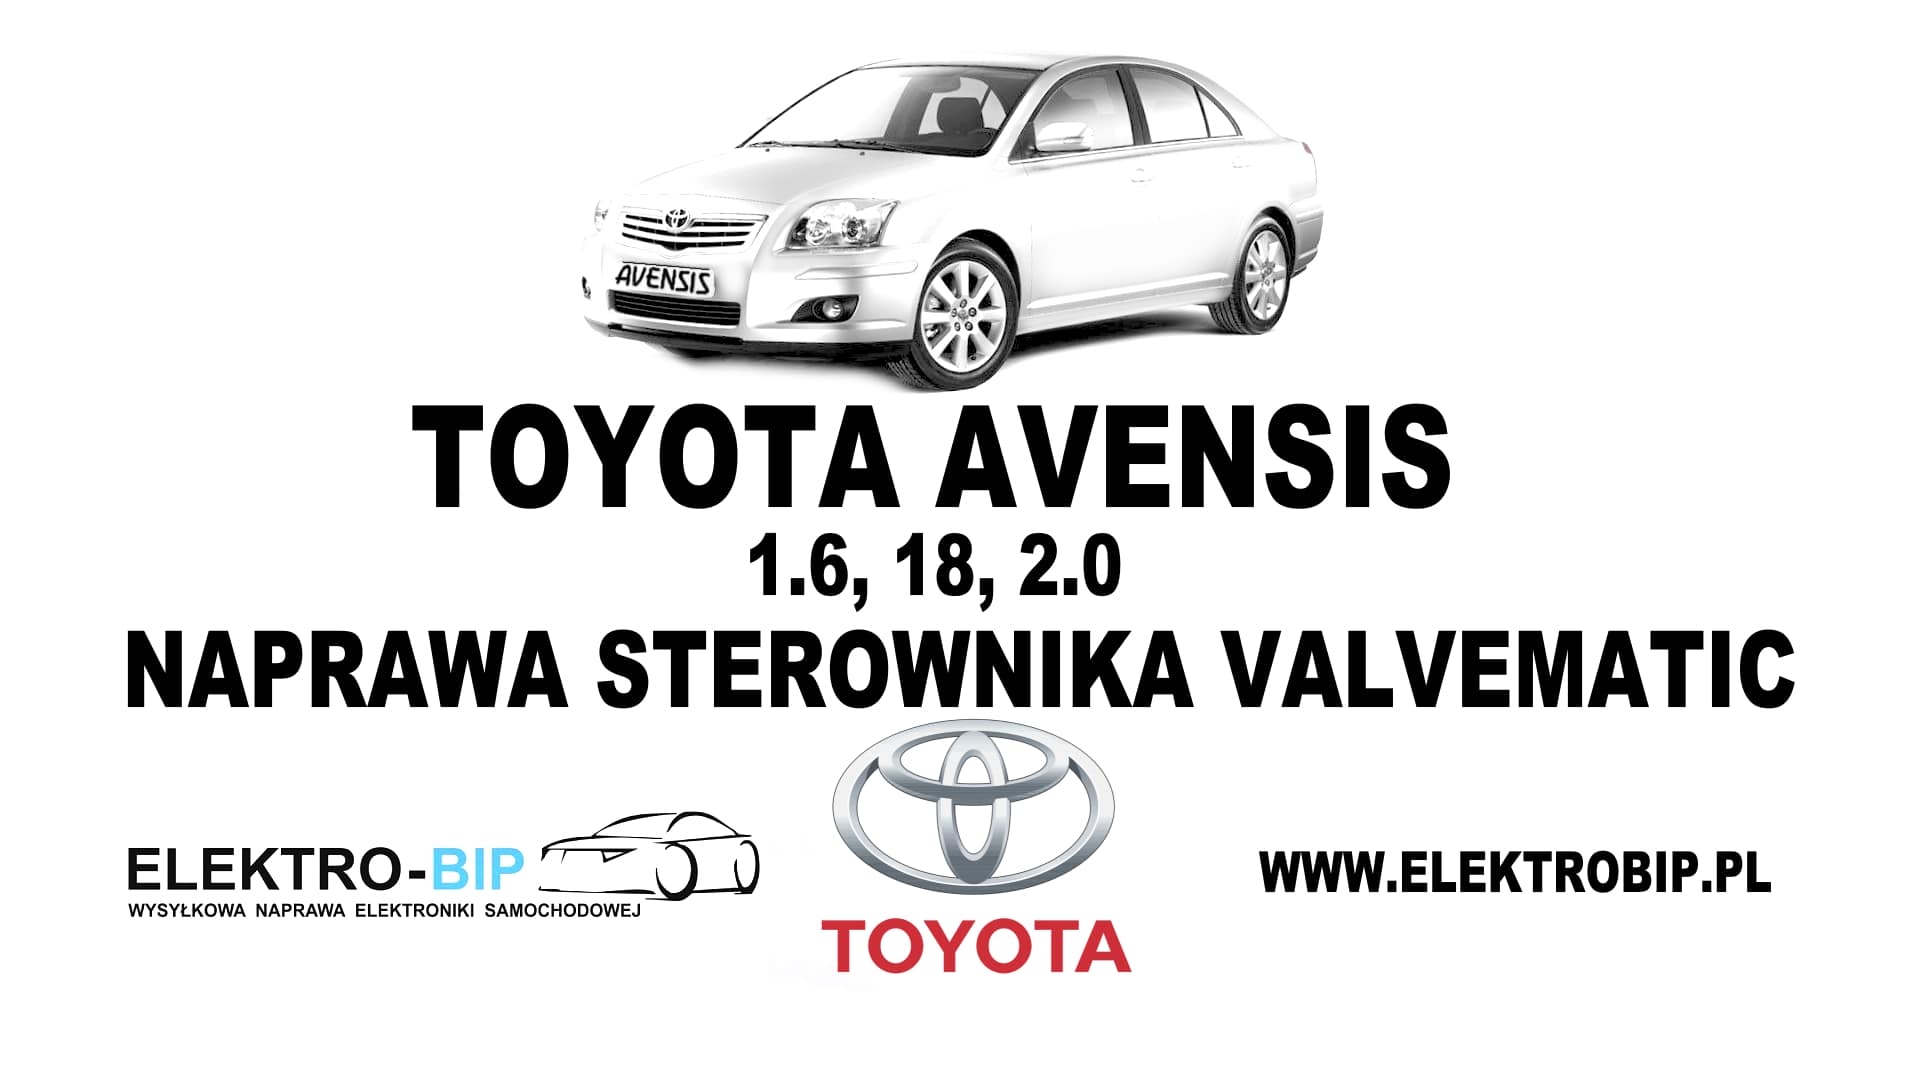 Toyota Avensis 1.6, 1.8, 2.0-naprawa-sterownika-Valvematic tagi: Samochód Toyota Avensis, pod nim napisy: Toyota Avensis 1.6, 1.8, 2.0, naprawa sterownika Valvematic